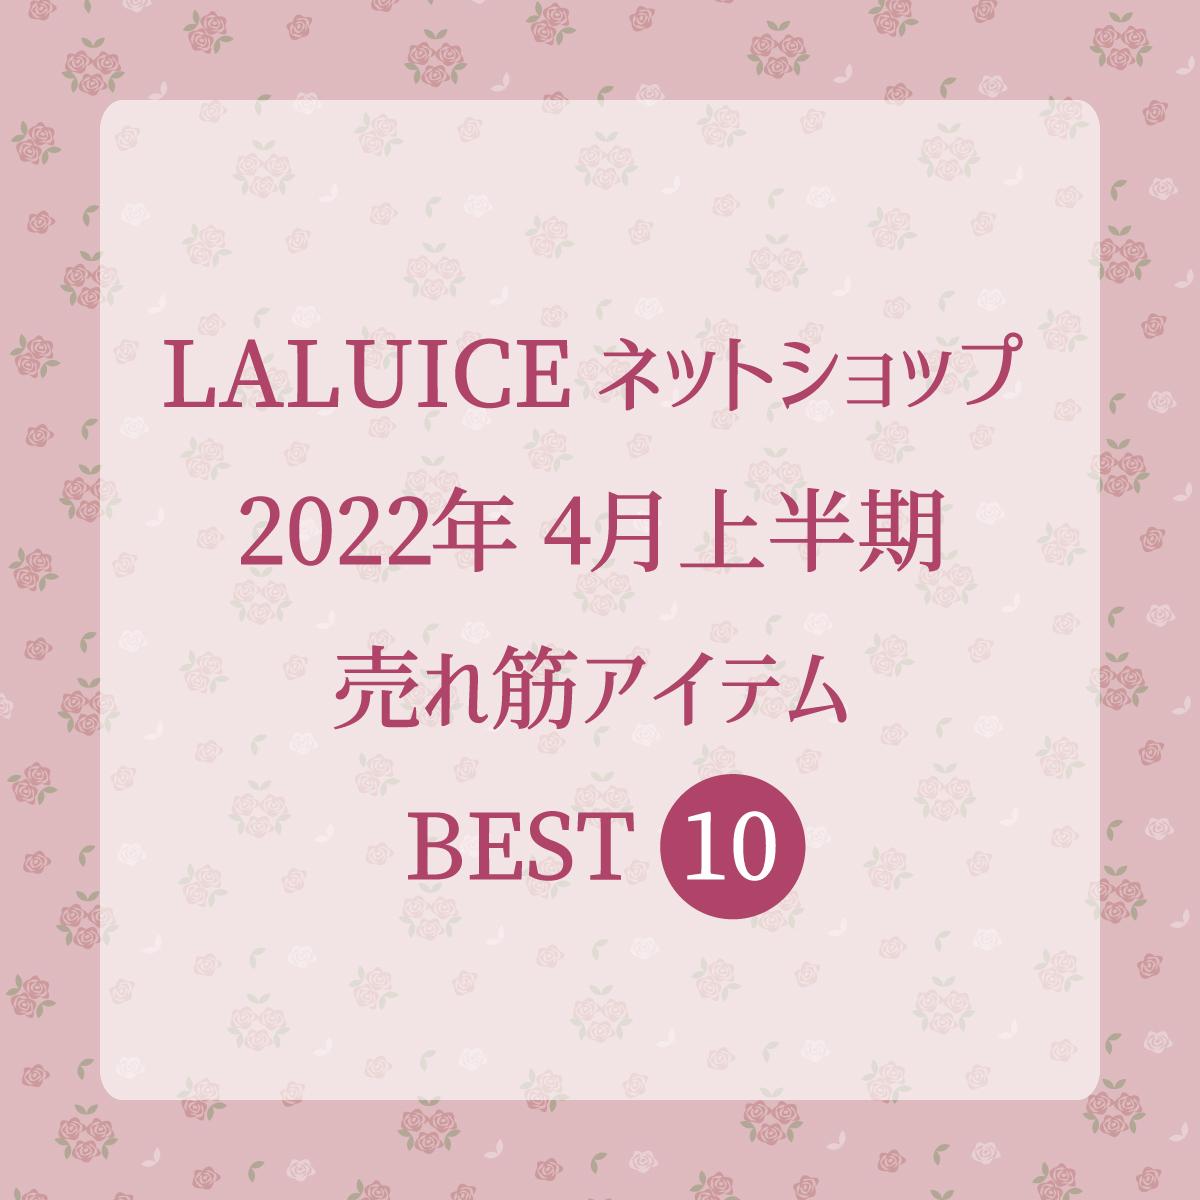 2022年4月上半期(4/1～4/15) LALUICEネットショップ売れ筋アイテム BEST10